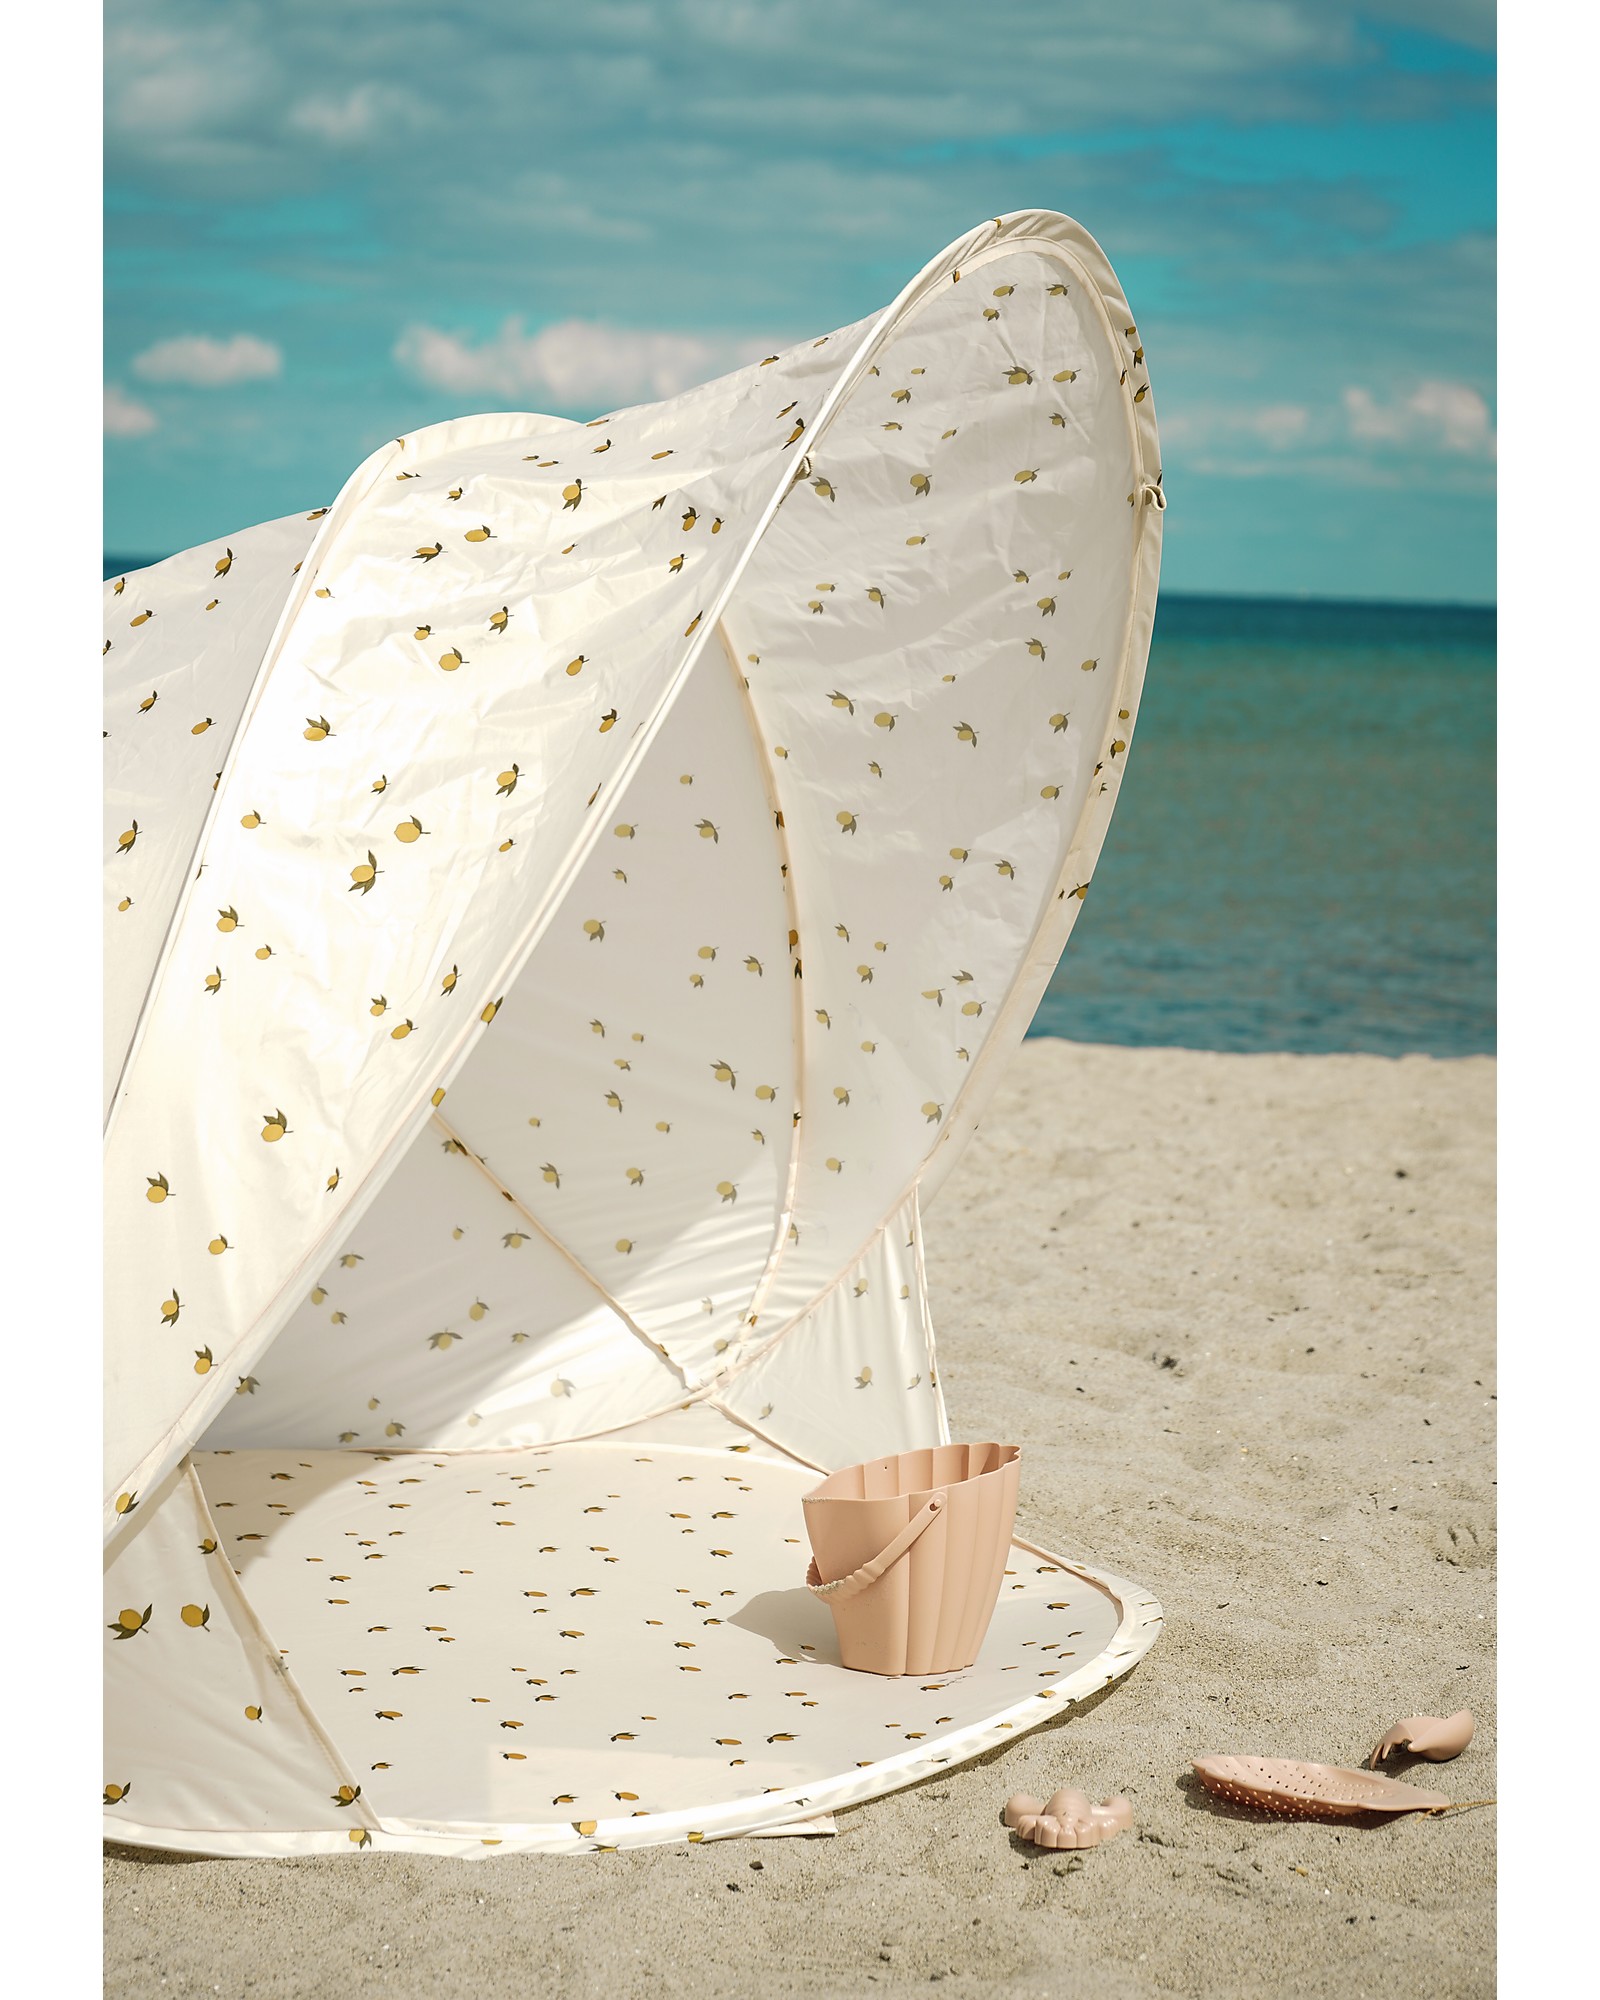 Acquista La nuova tenda da sole per auto protezione UV tenda per